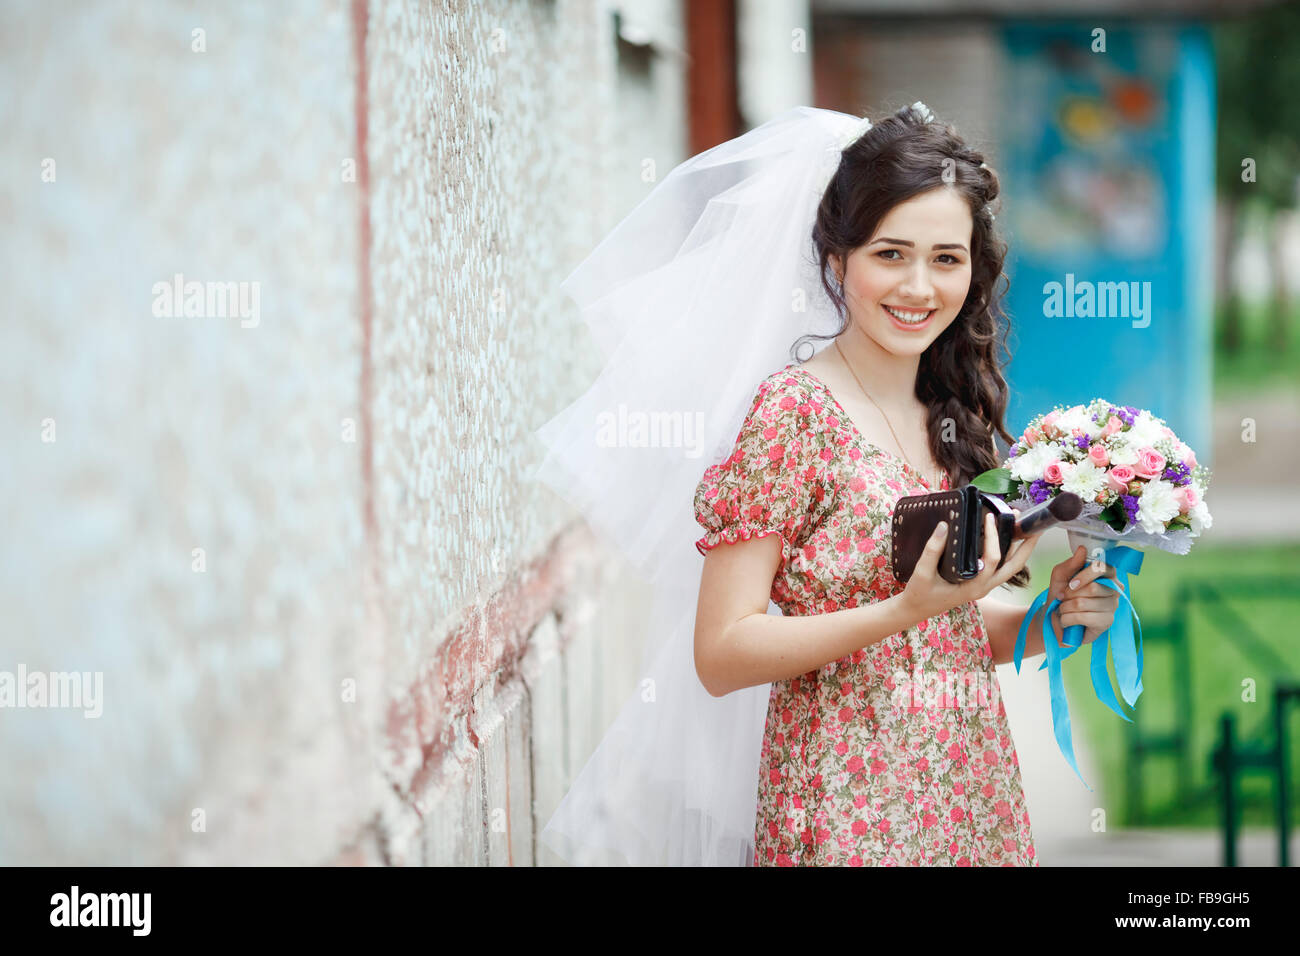 Die Braut in einem schlichten Retro-Kleid mit Blumenmuster, bereits tragen Schleier, Brautstrauß und Handtasche, posiert vor Haus, direkt in die Kamera, lächelnd. Stockfoto